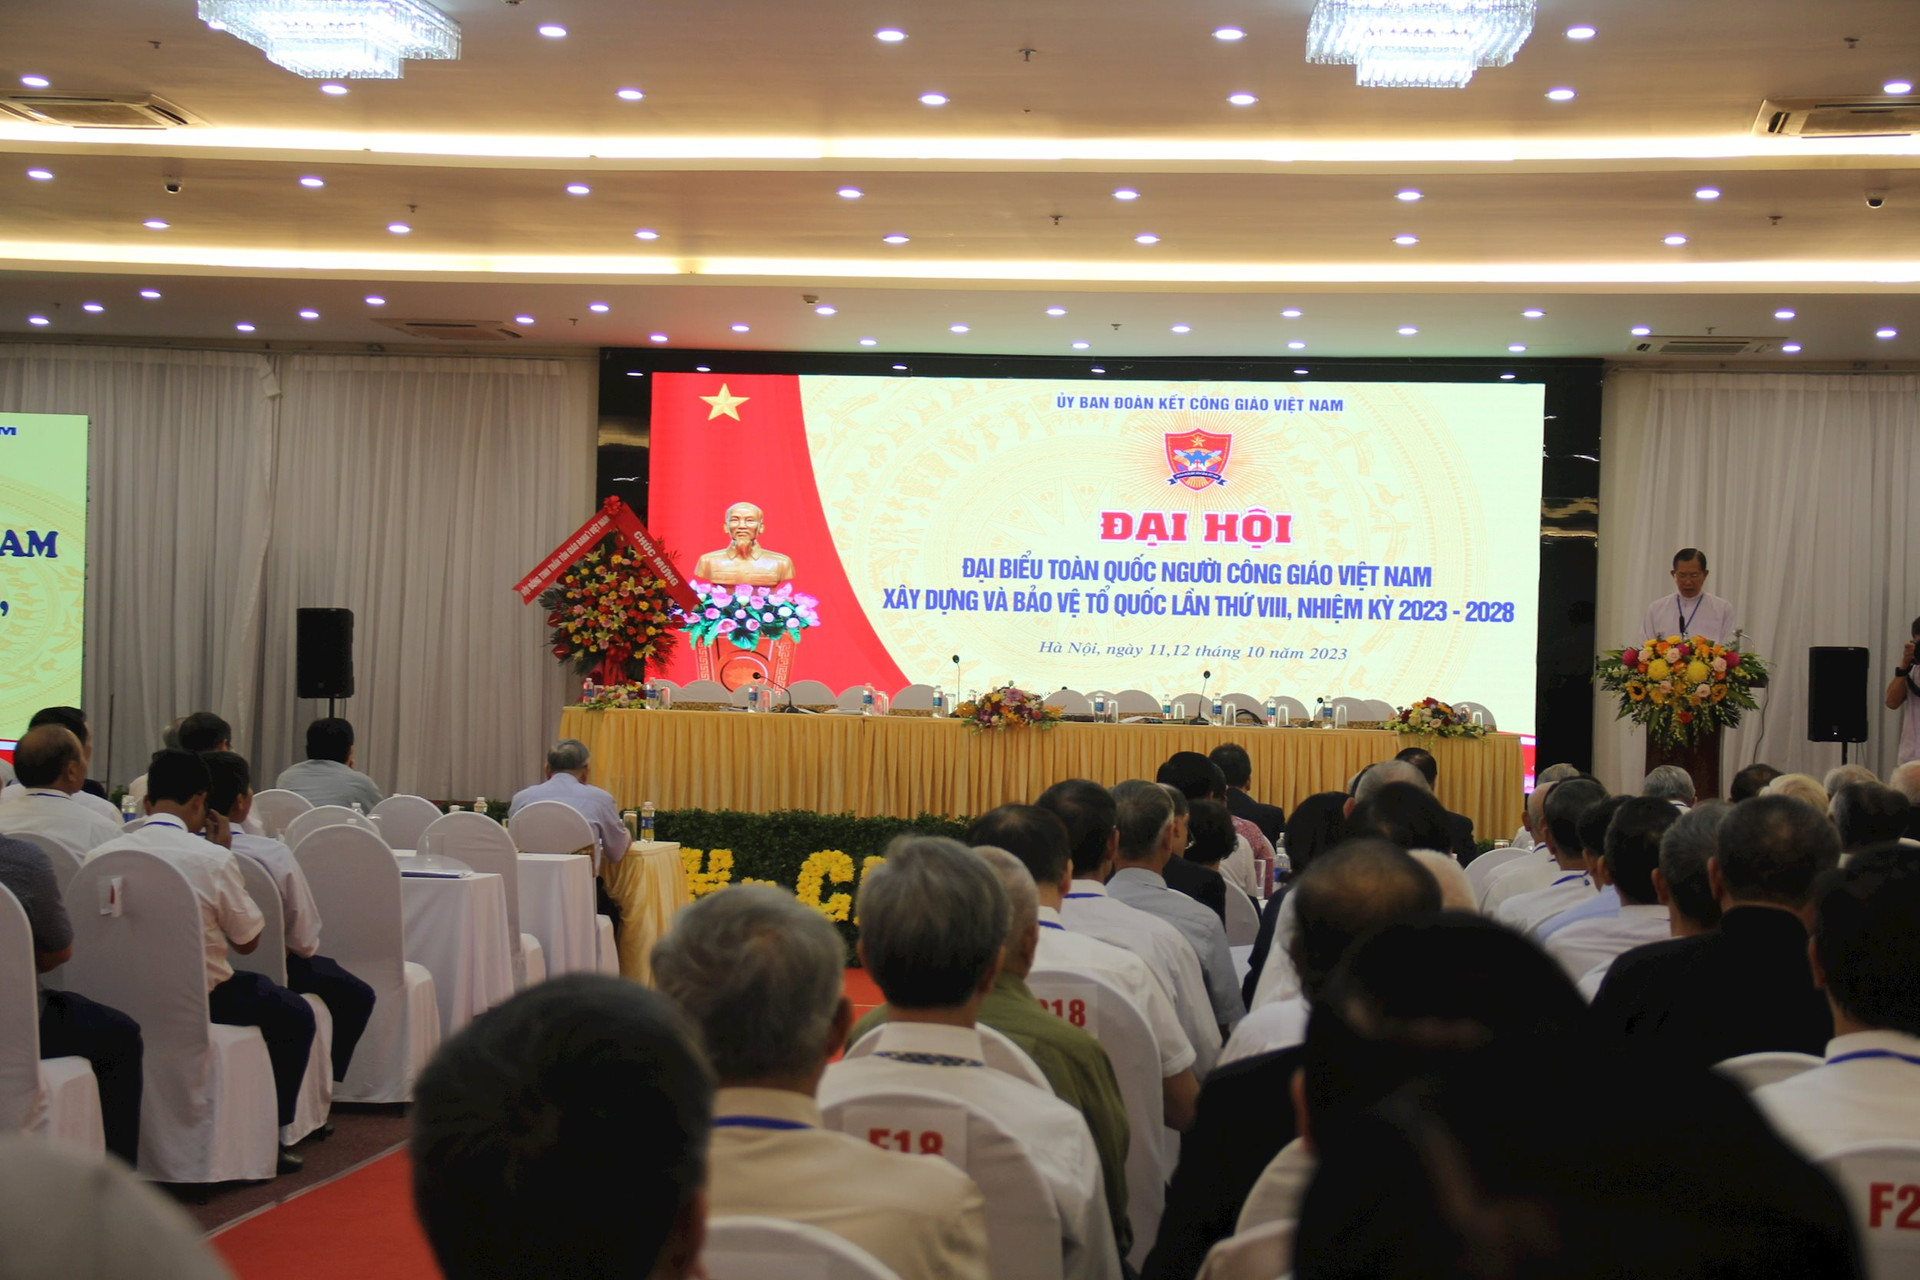 Đại hội đại biểu Người Công giáo Việt Nam: Giải quyết kịp thời nhu cầu hợp pháp, chính đáng của đồng bào công giáo